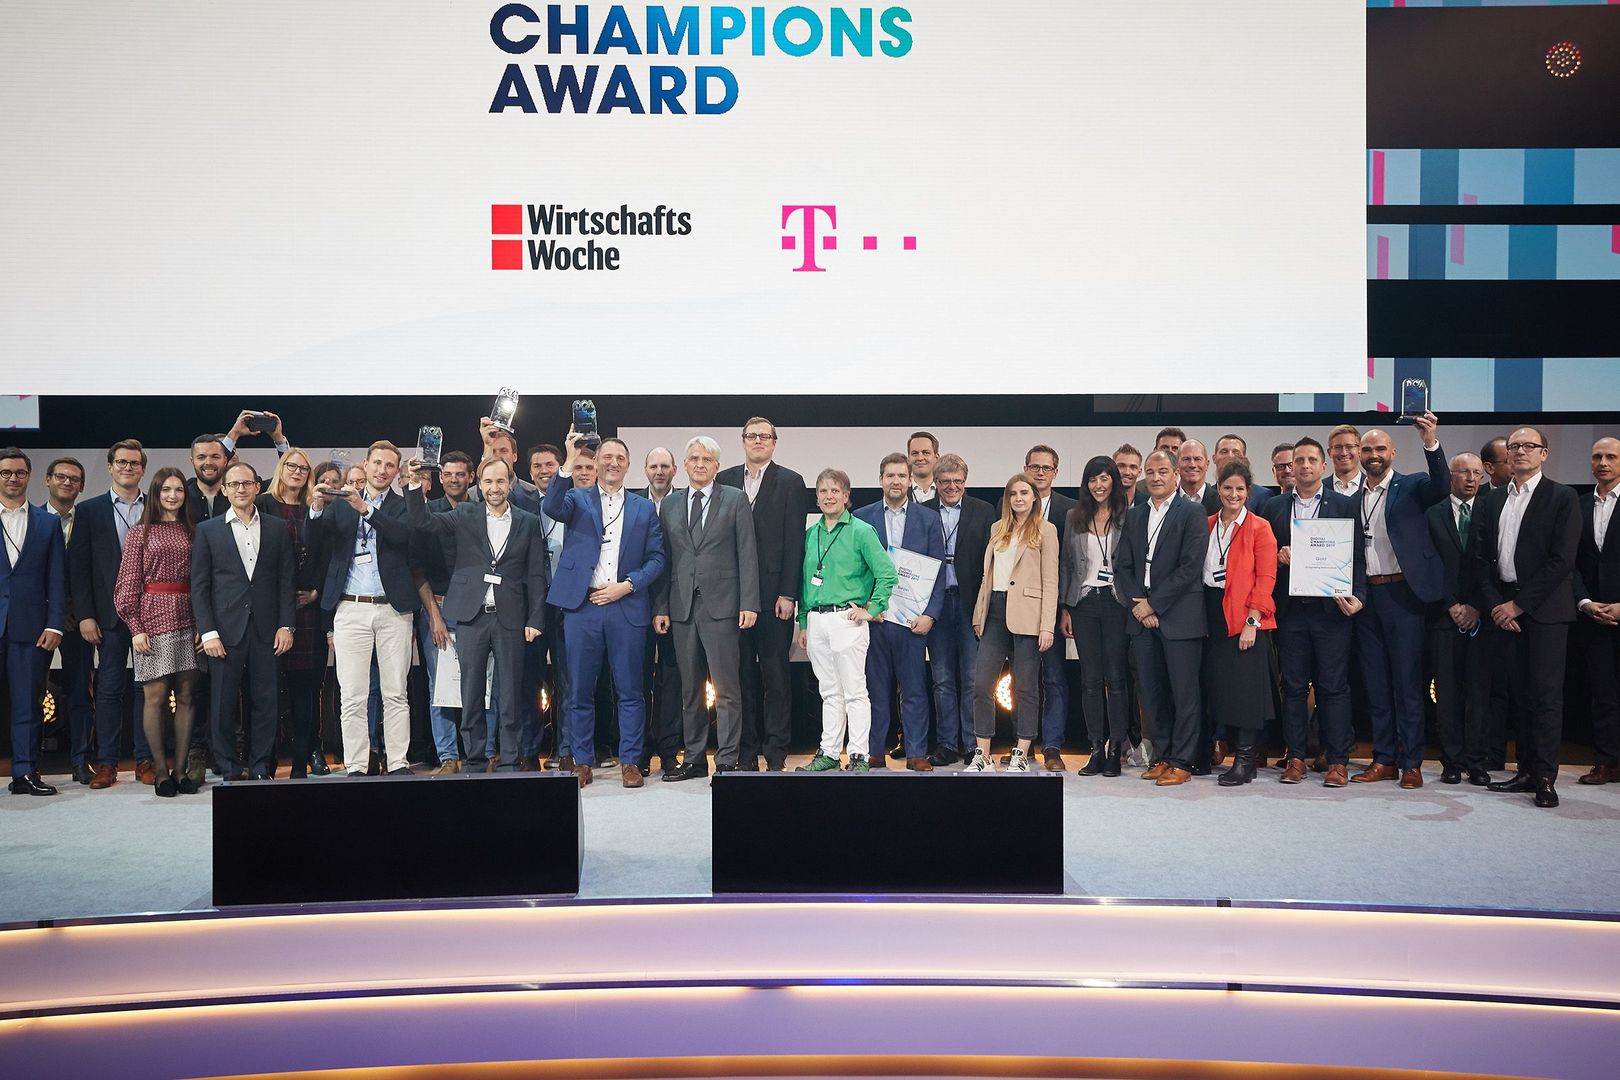 Next Kraftwerke wins the Digital Champions Award